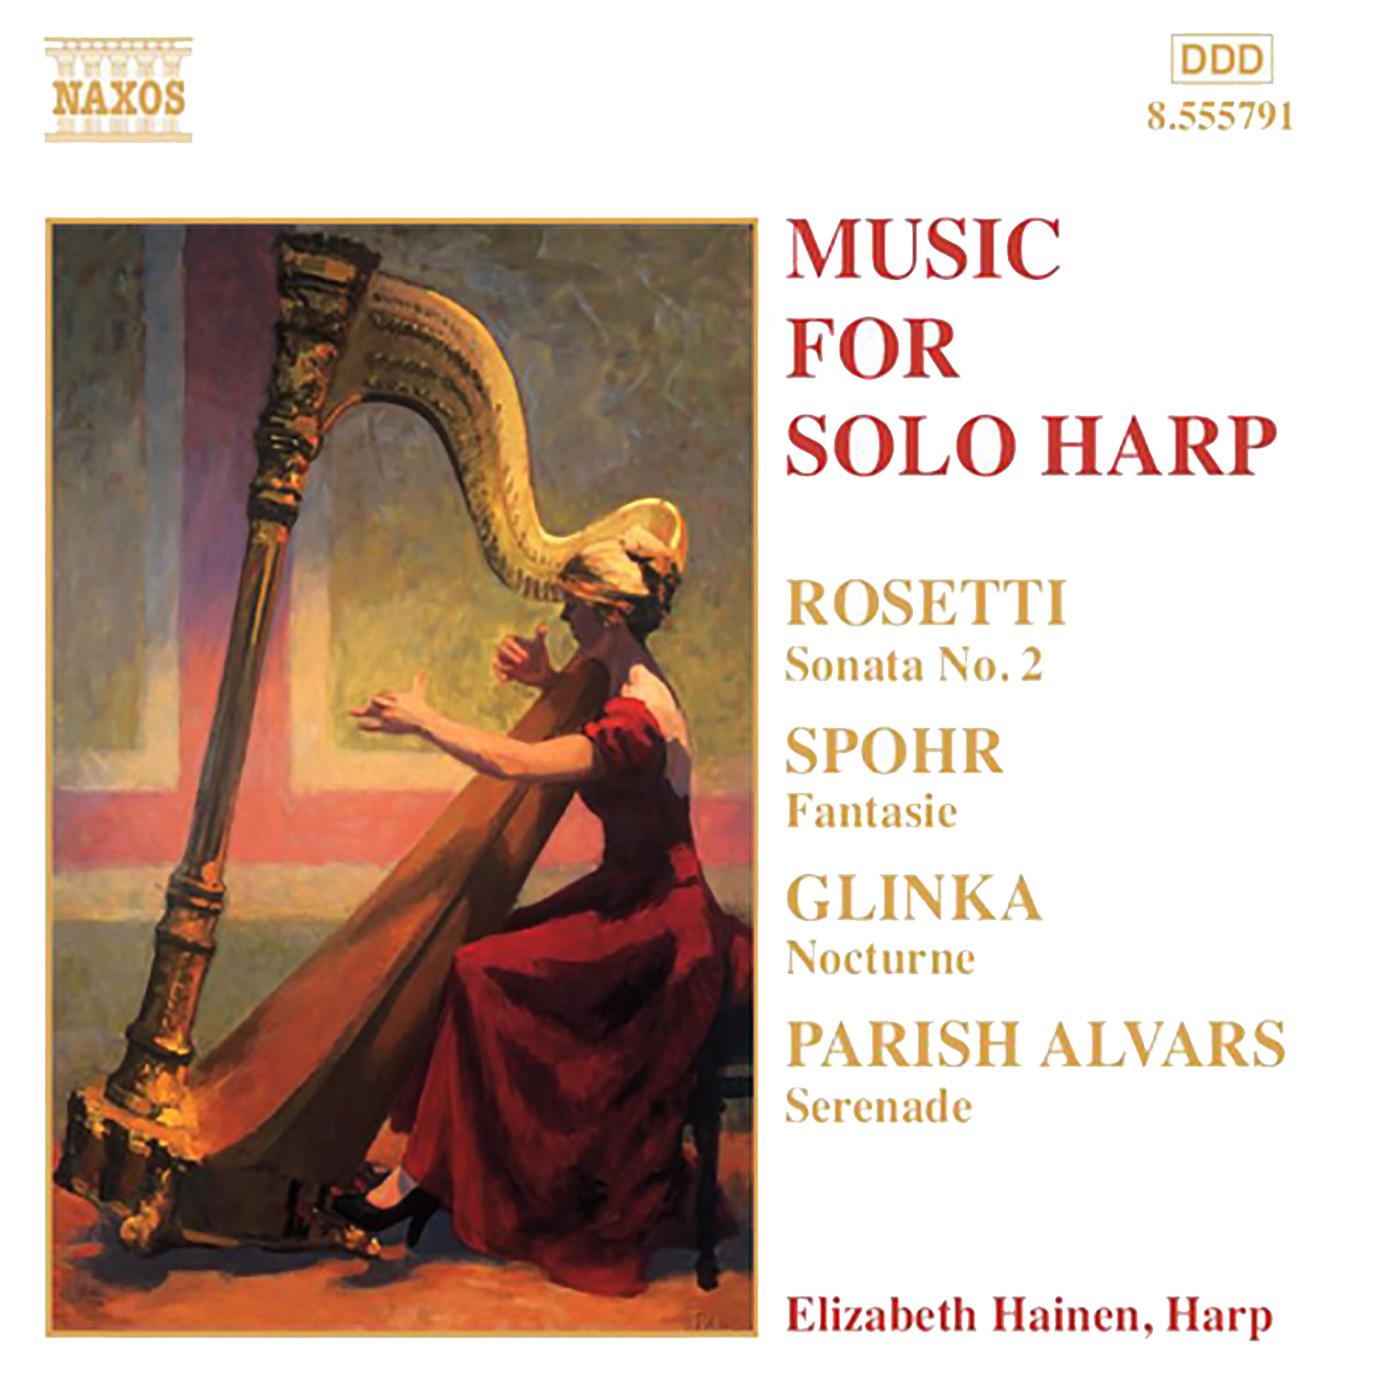 Elizabeth Hainen - 3 Etudes de concert, S144/R5:3 etudes de concert, S144/R5: No.3 in D-Flat Major, 